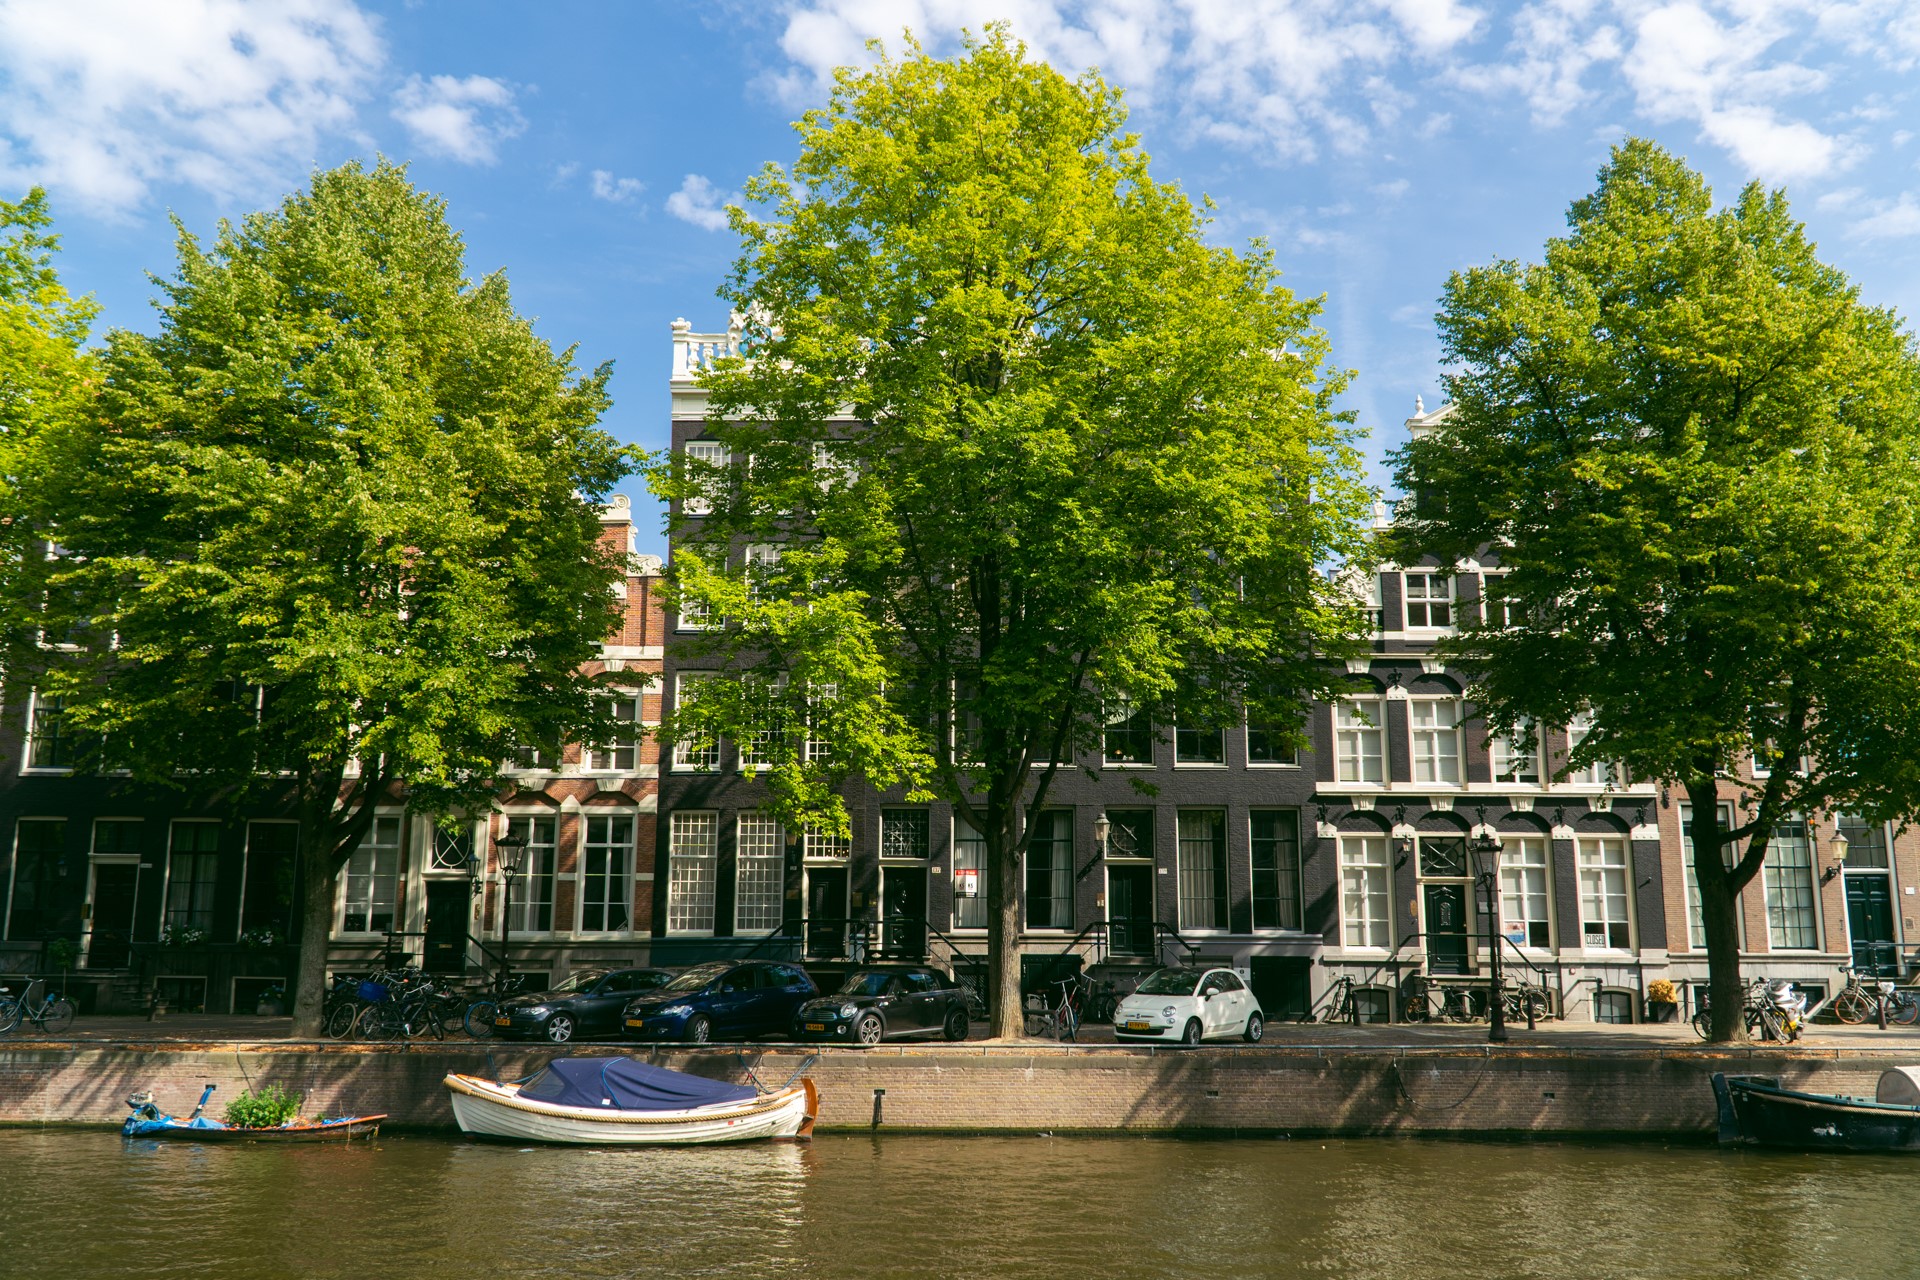 Rejsy po kanałach w Amsterdamie | Weekend w Amsterdamie